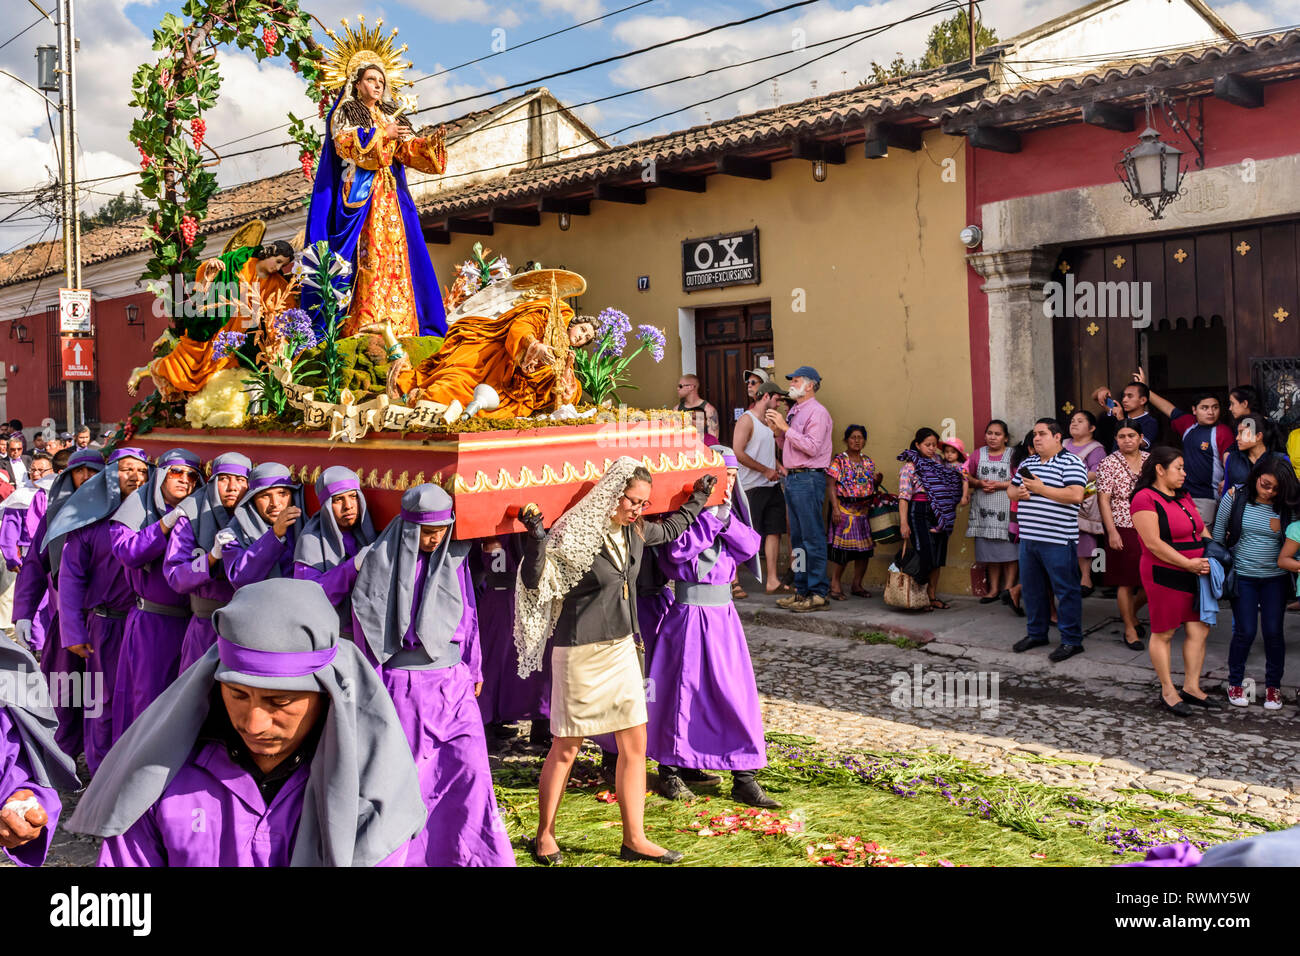 Antigua, Guatemala - 18. Februar 2018: Die fastenzeit Prozession in der kolonialen Stadt mit dem berühmtesten Feierlichkeiten zur Karwoche in Lateinamerika. Stockfoto